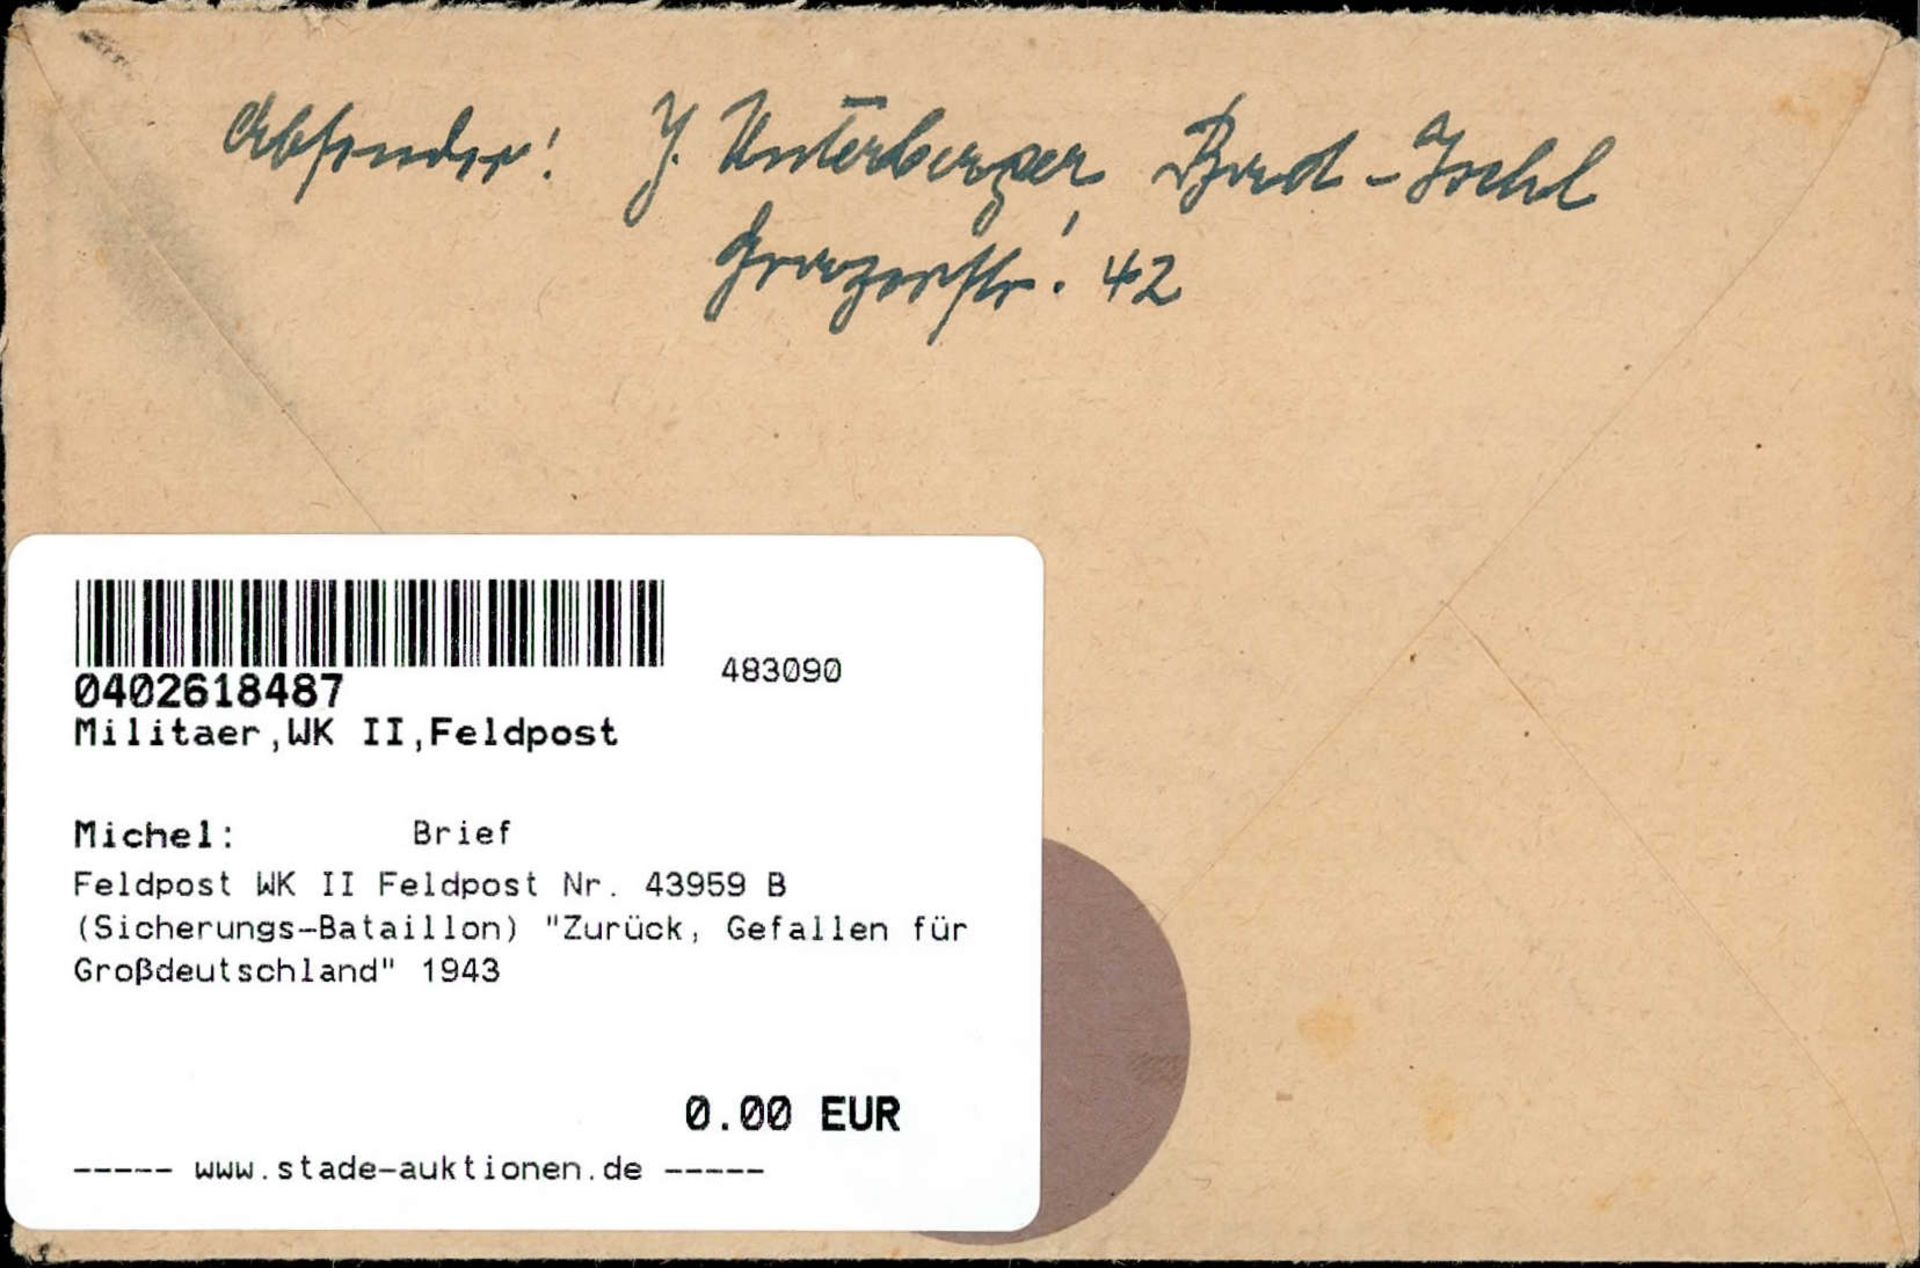 Feldpost WK II Feldpost Nr. 43959 B (Sicherungs-Bataillon) Zurück, Gefallen für Großdeutschland" - Bild 2 aus 2